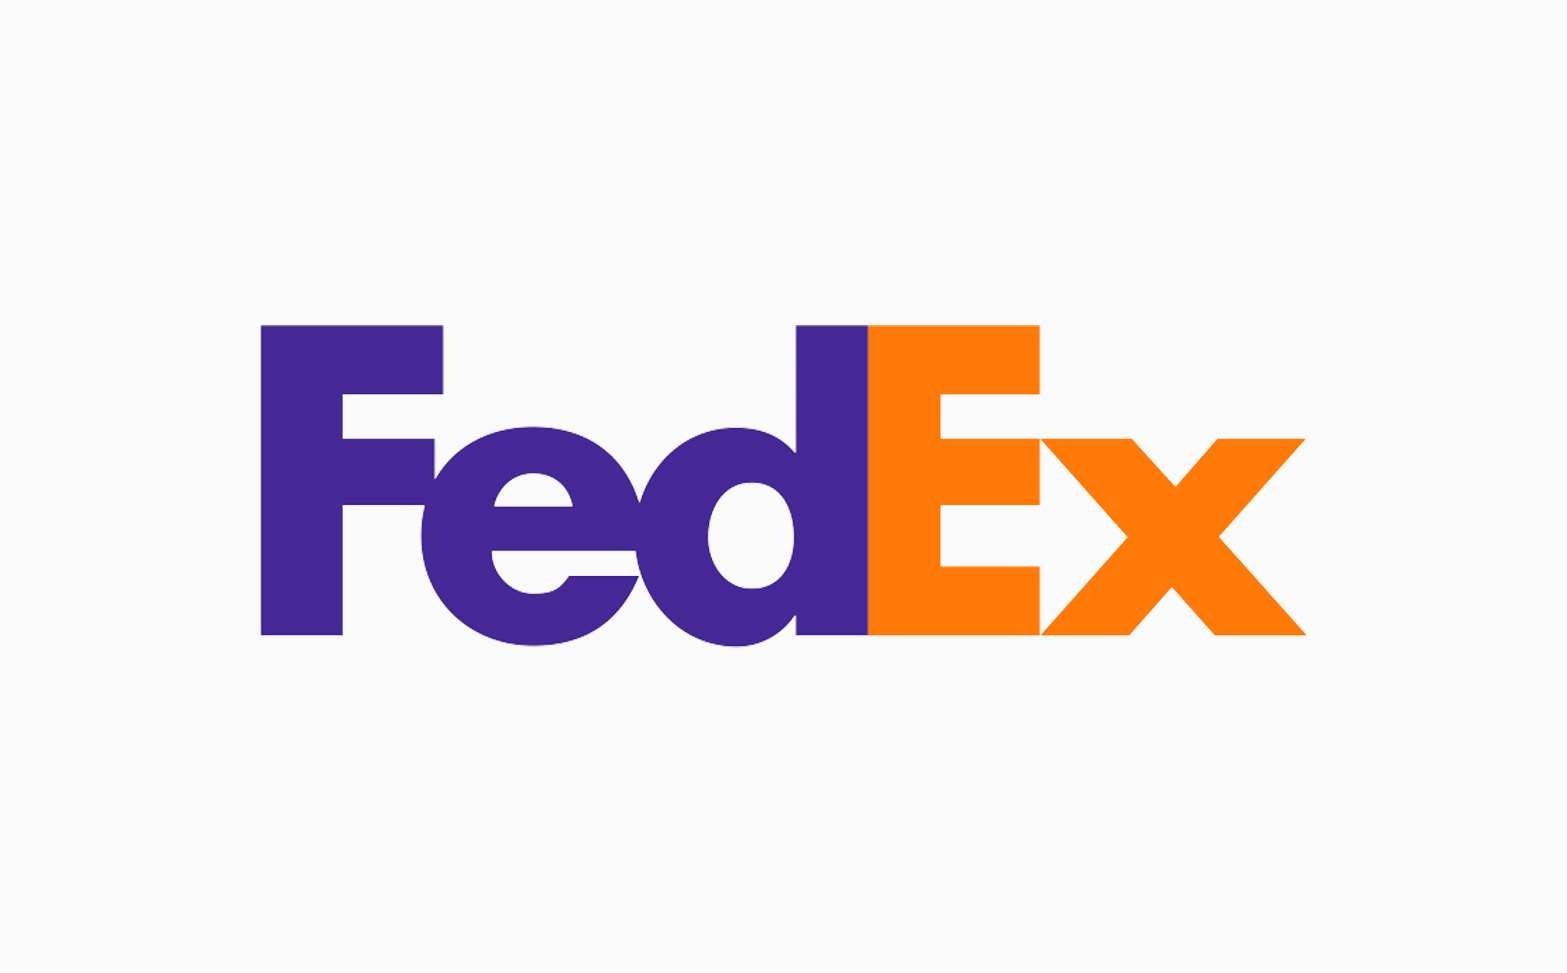 Fed Ex logo